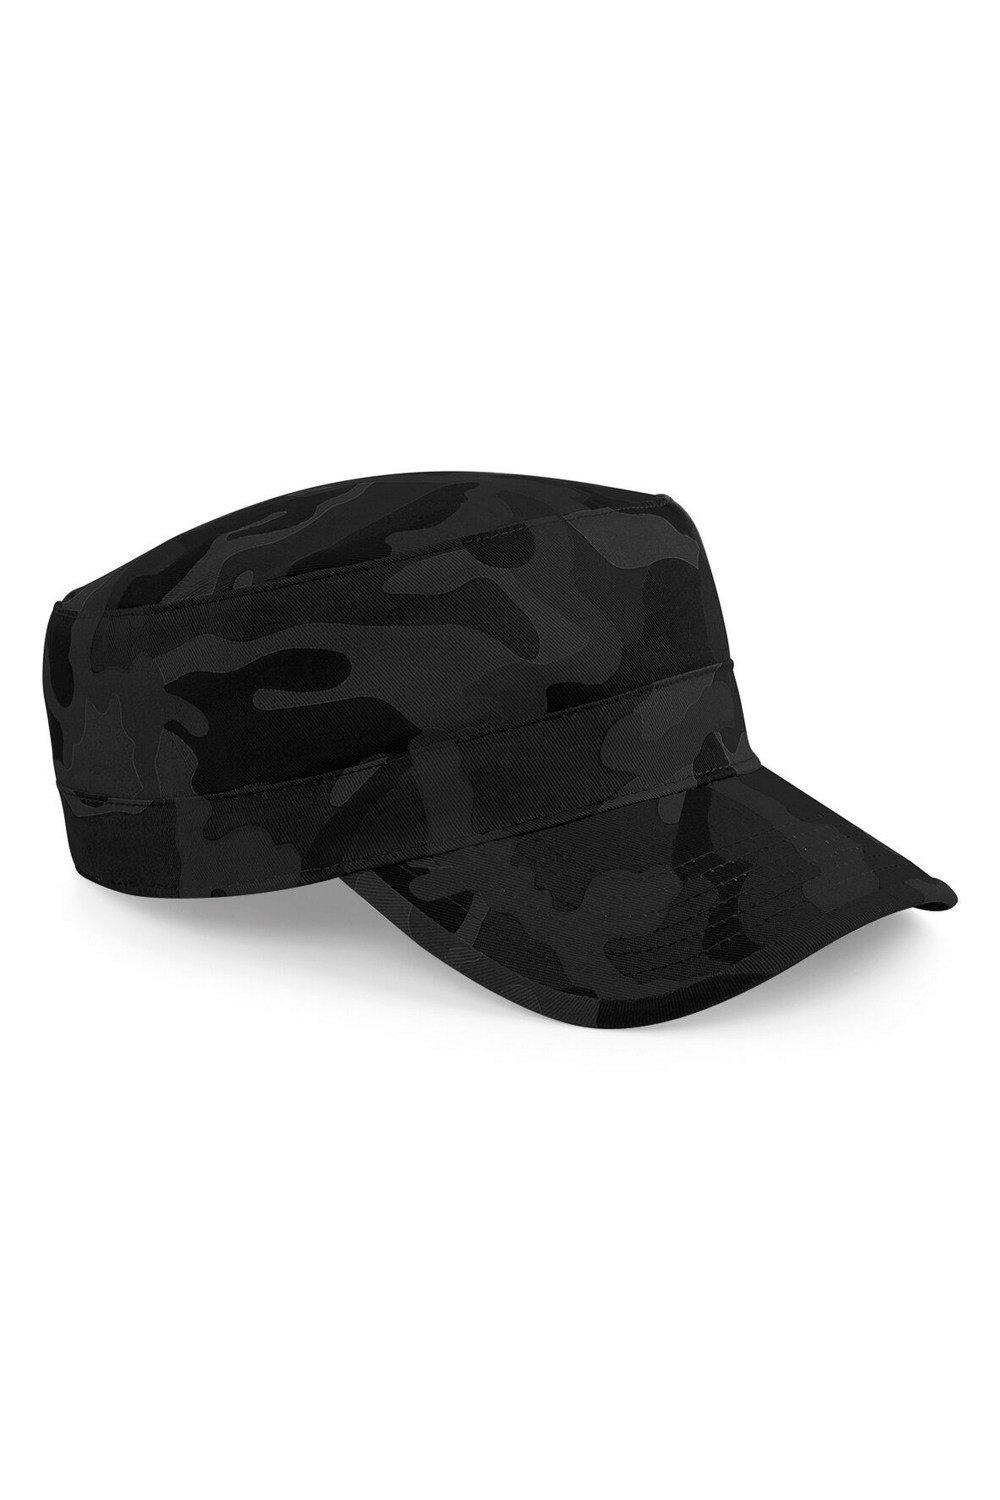 Камуфляжная армейская кепка/головной убор Beechfield, черный футболка хлопок принт камуфляжный размер 56